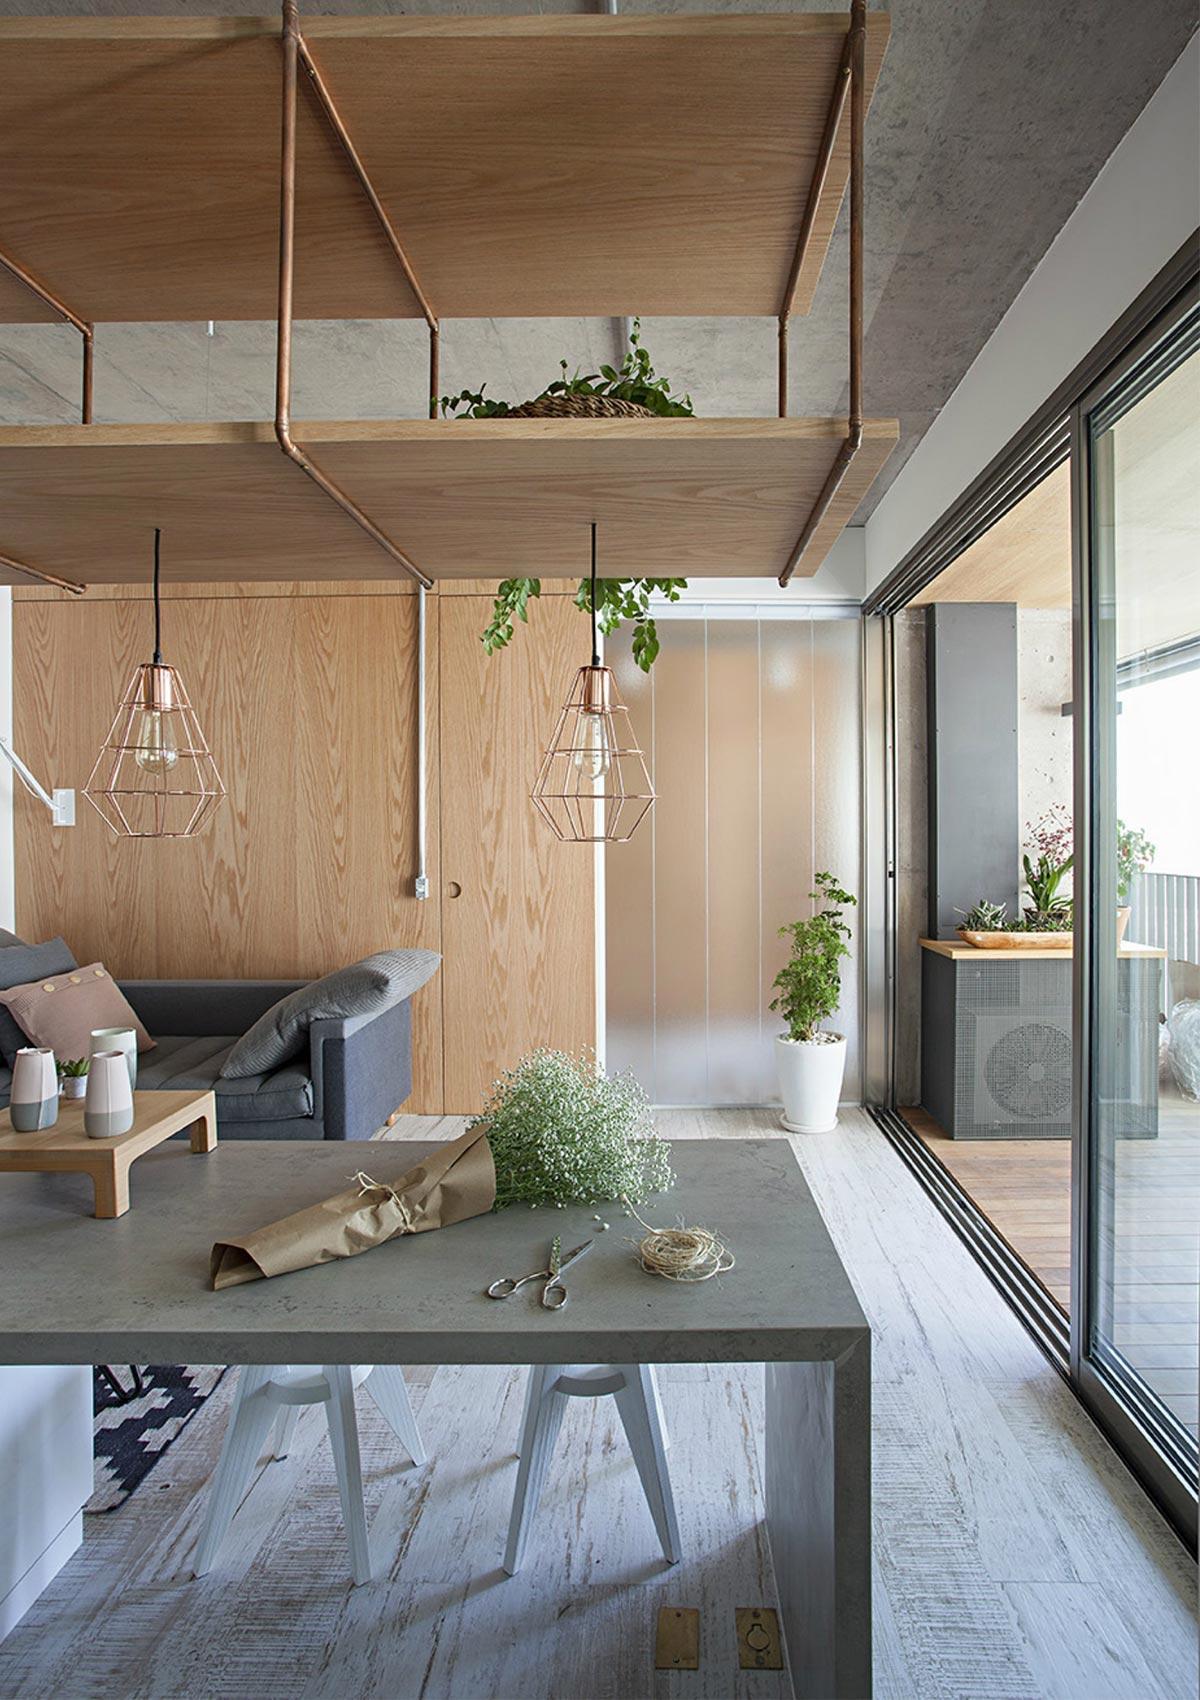 Thiết kế nội thất căn hộ chung cư 60m2 phong cách Scandinavian